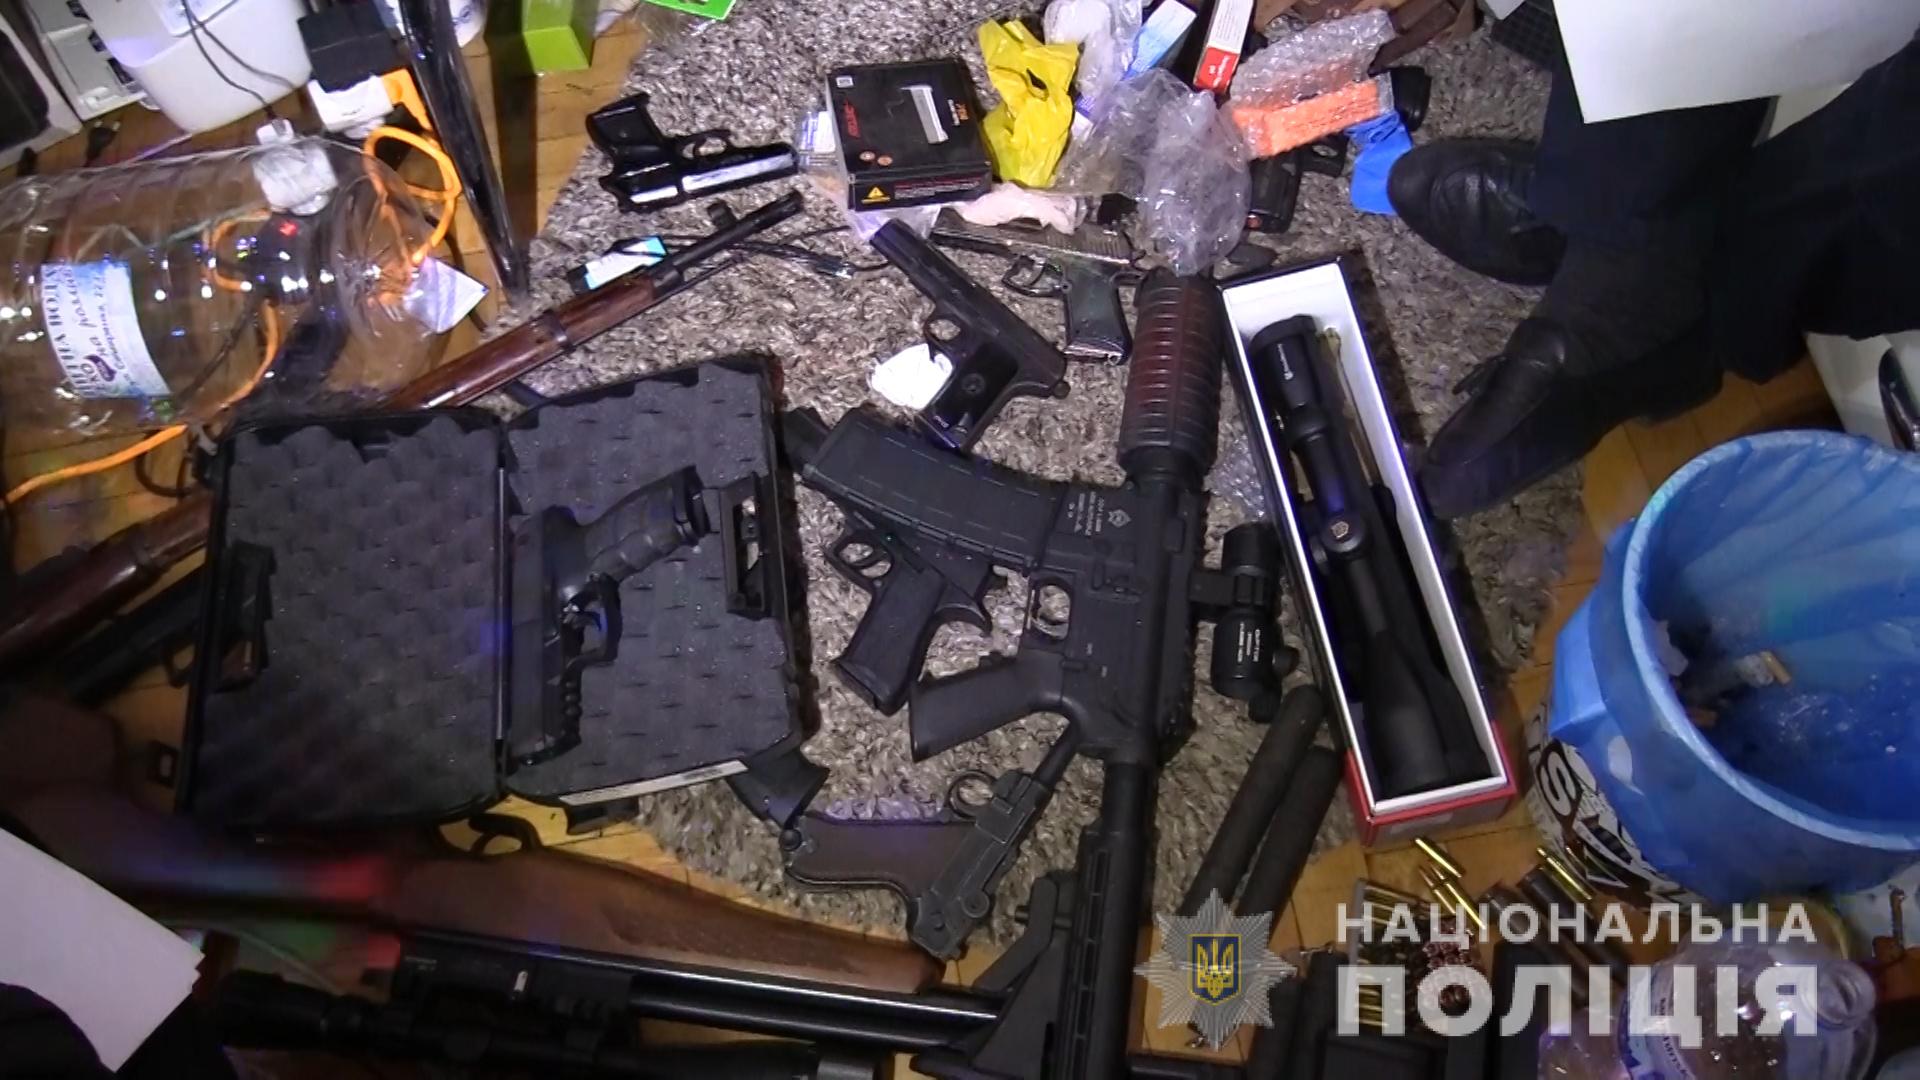 В Киеве нетрезвый мужчина угрожал оружием соседям и правоохранителям (фото, видео)